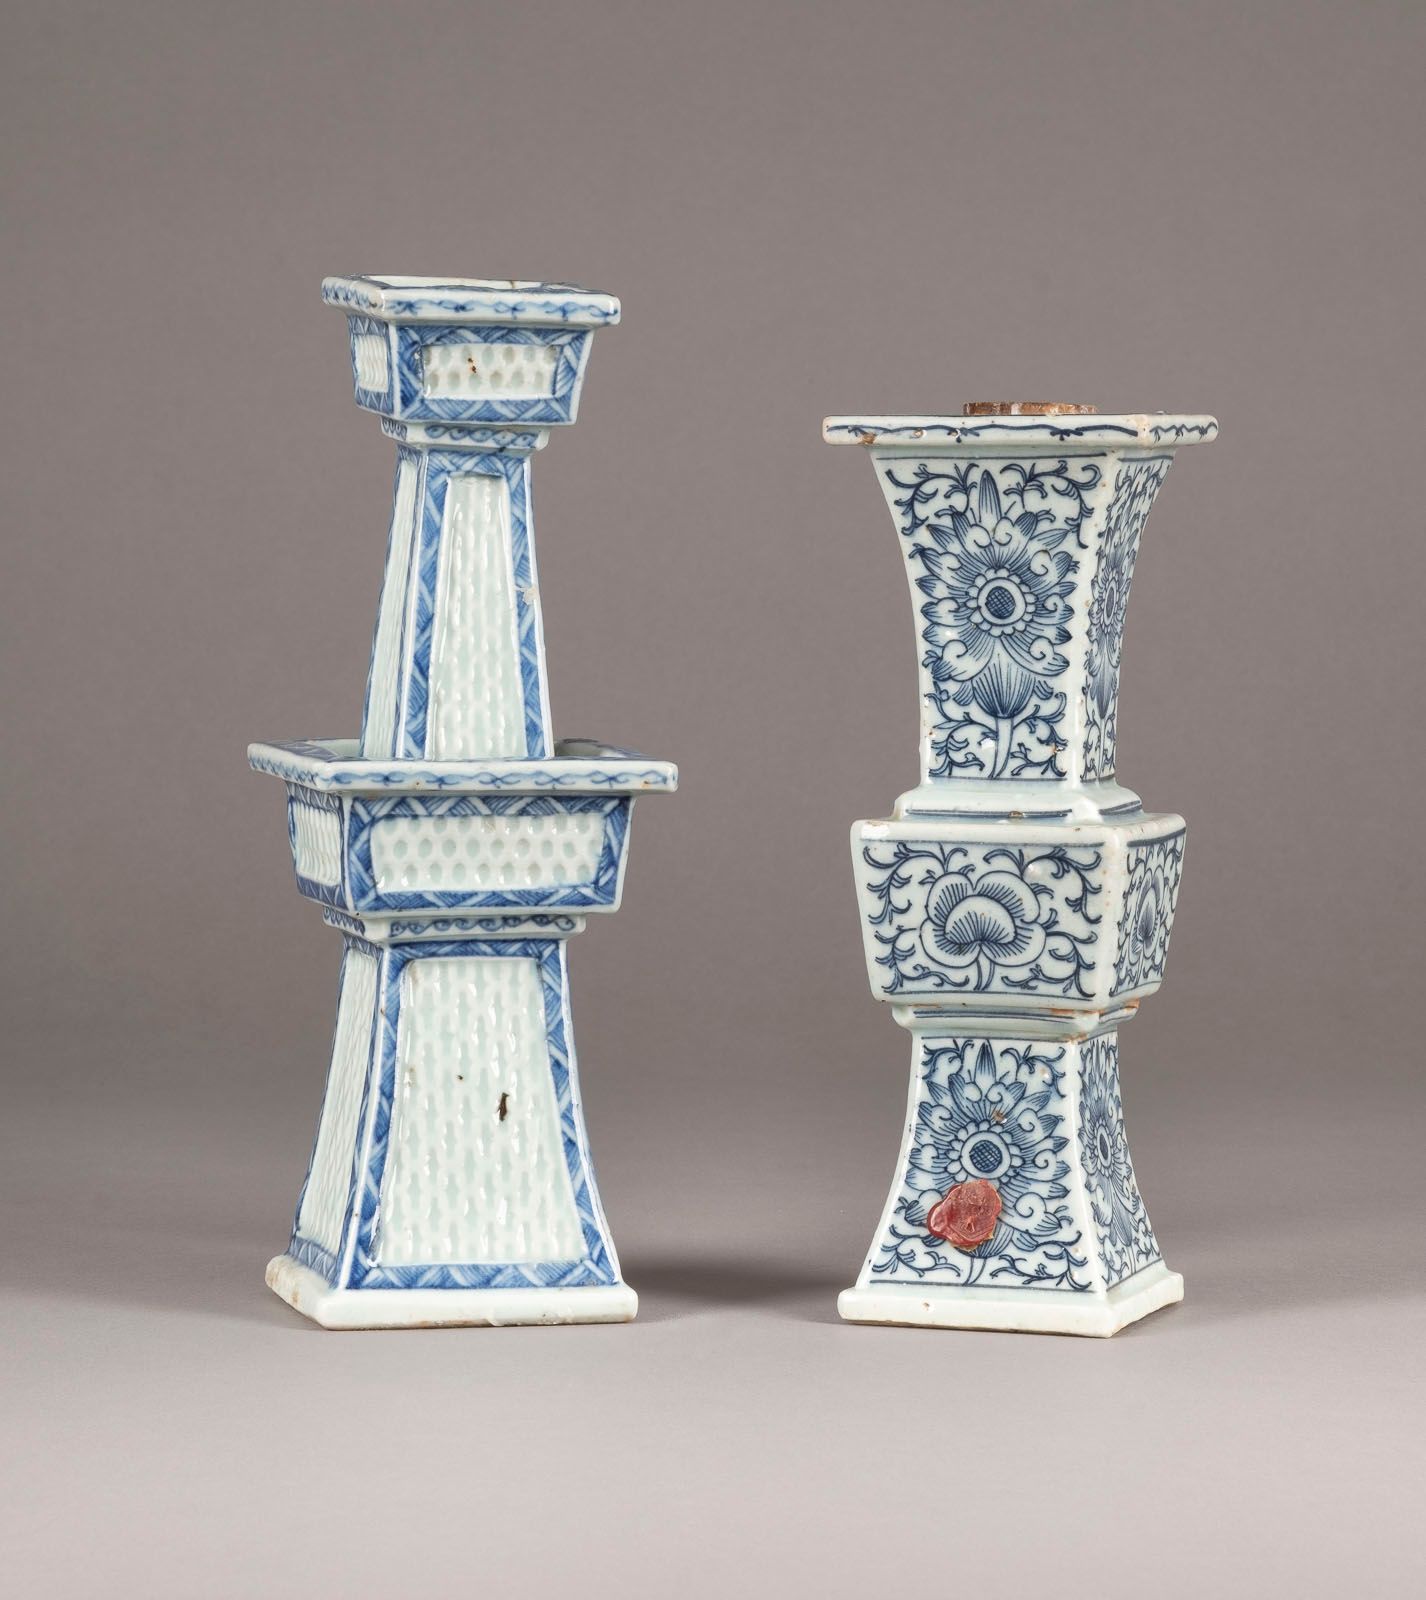 ZWEI BLAU-WEISSE KERZENSTÄNDER 两个青花烛台 中国，清末或民国时期 瓷器。高21-24.5厘米。一件作品的底部以及另一件作品的侧面&hellip;